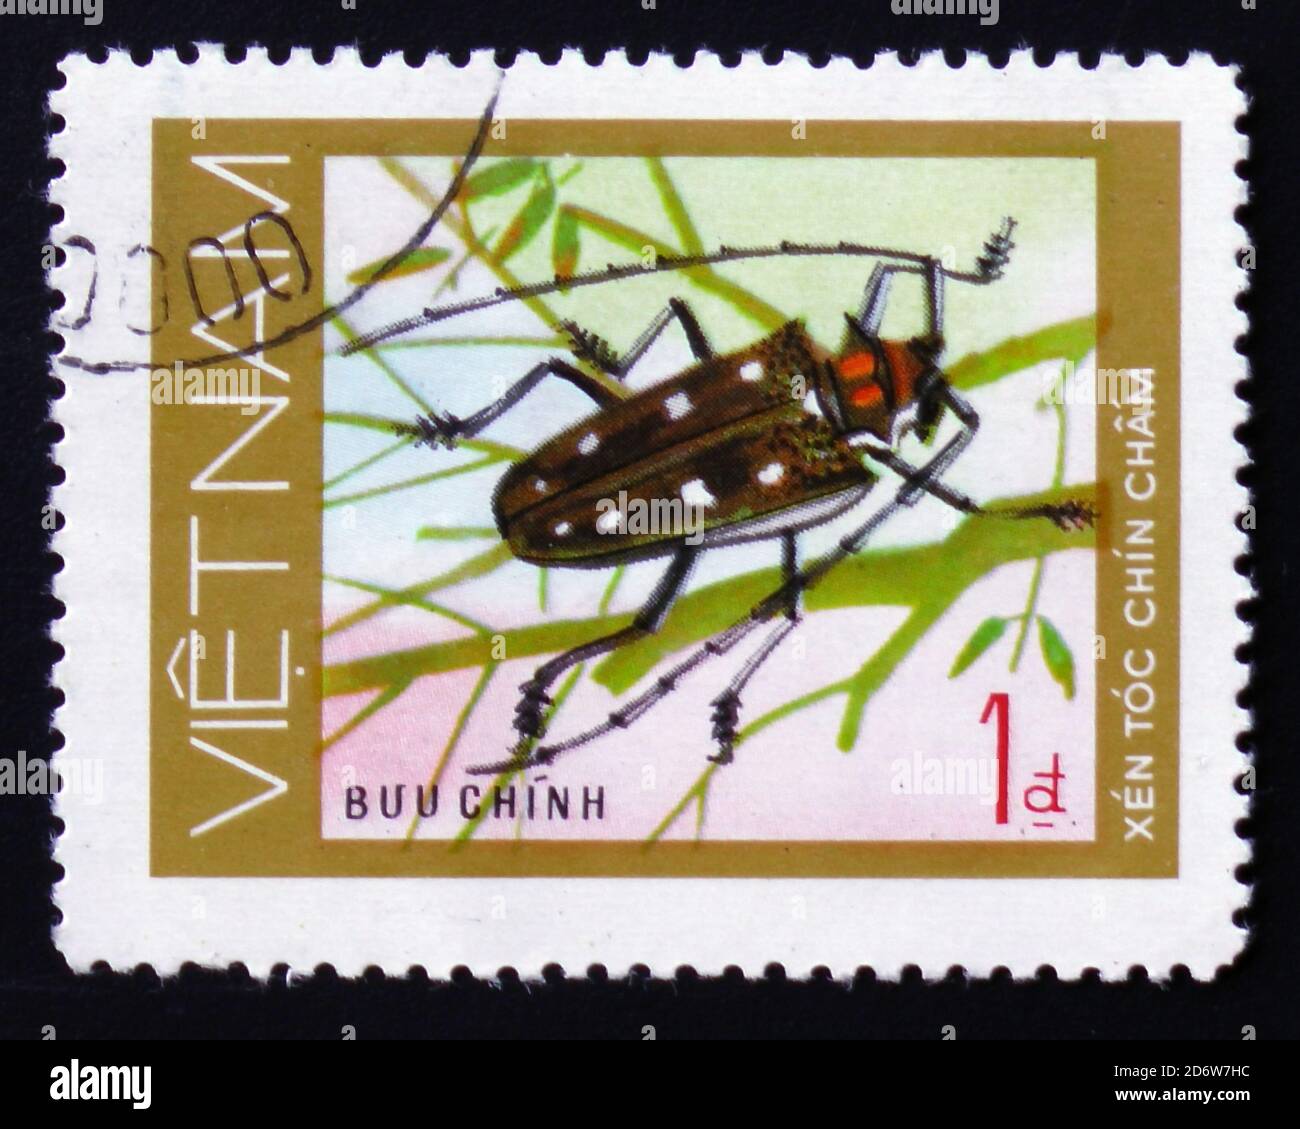 MOSCA, RUSSIA - 12 FEBBRAIO 2017: Un francobollo stampato in VIETNAM, mostra insetto animale lungo corno scarabeo, Xin toc Chin cham, circa 1981 Foto Stock